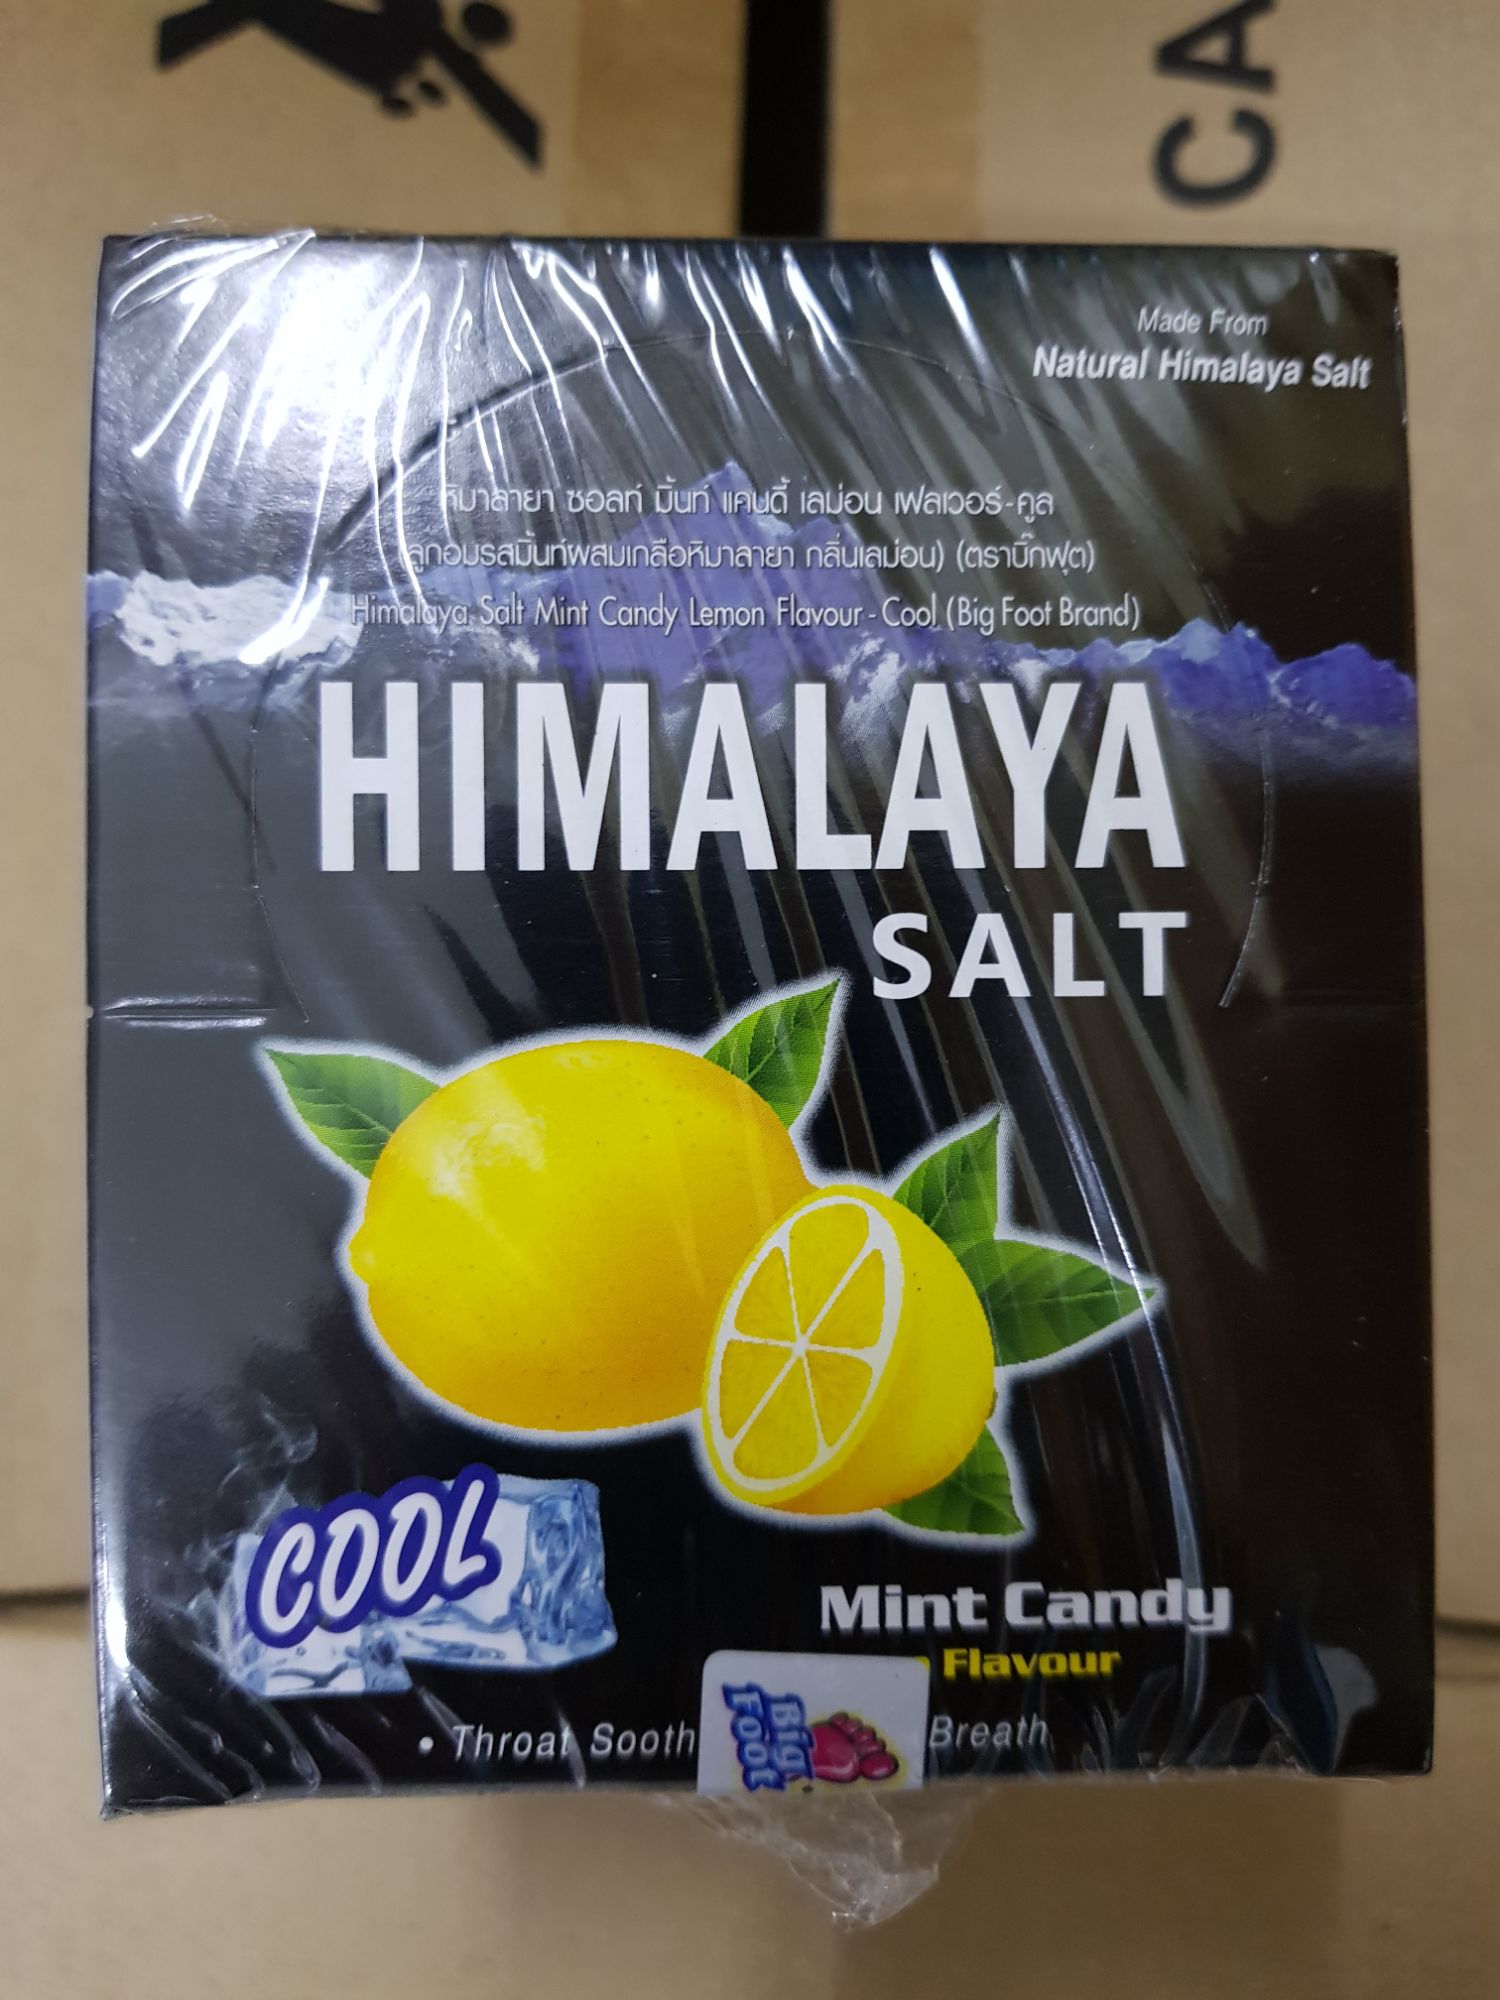 Himalaya salt Mint Candy ลูกอมหิมาลายารสมิ้นท์ผสมเกลือ กลิ่นเลมอน จำนวน 1กล่อง(12ซอง)